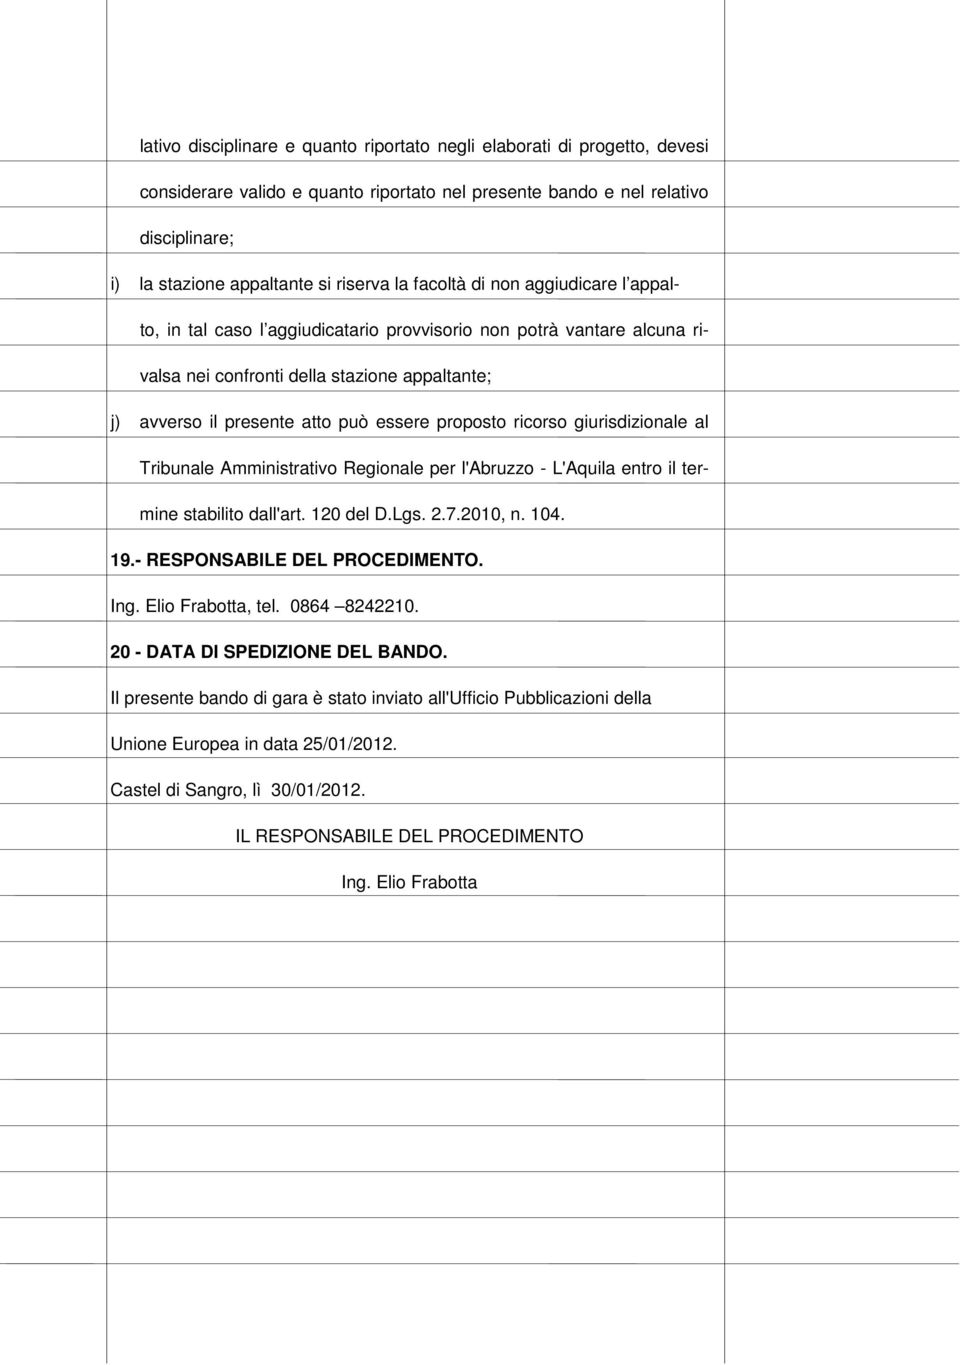 proposto ricorso giurisdizionale al Tribunale Amministrativo Regionale per l'abruzzo - L'Aquila entro il termine stabilito dall'art. 120 del D.Lgs. 2.7.2010, n. 104. 19.